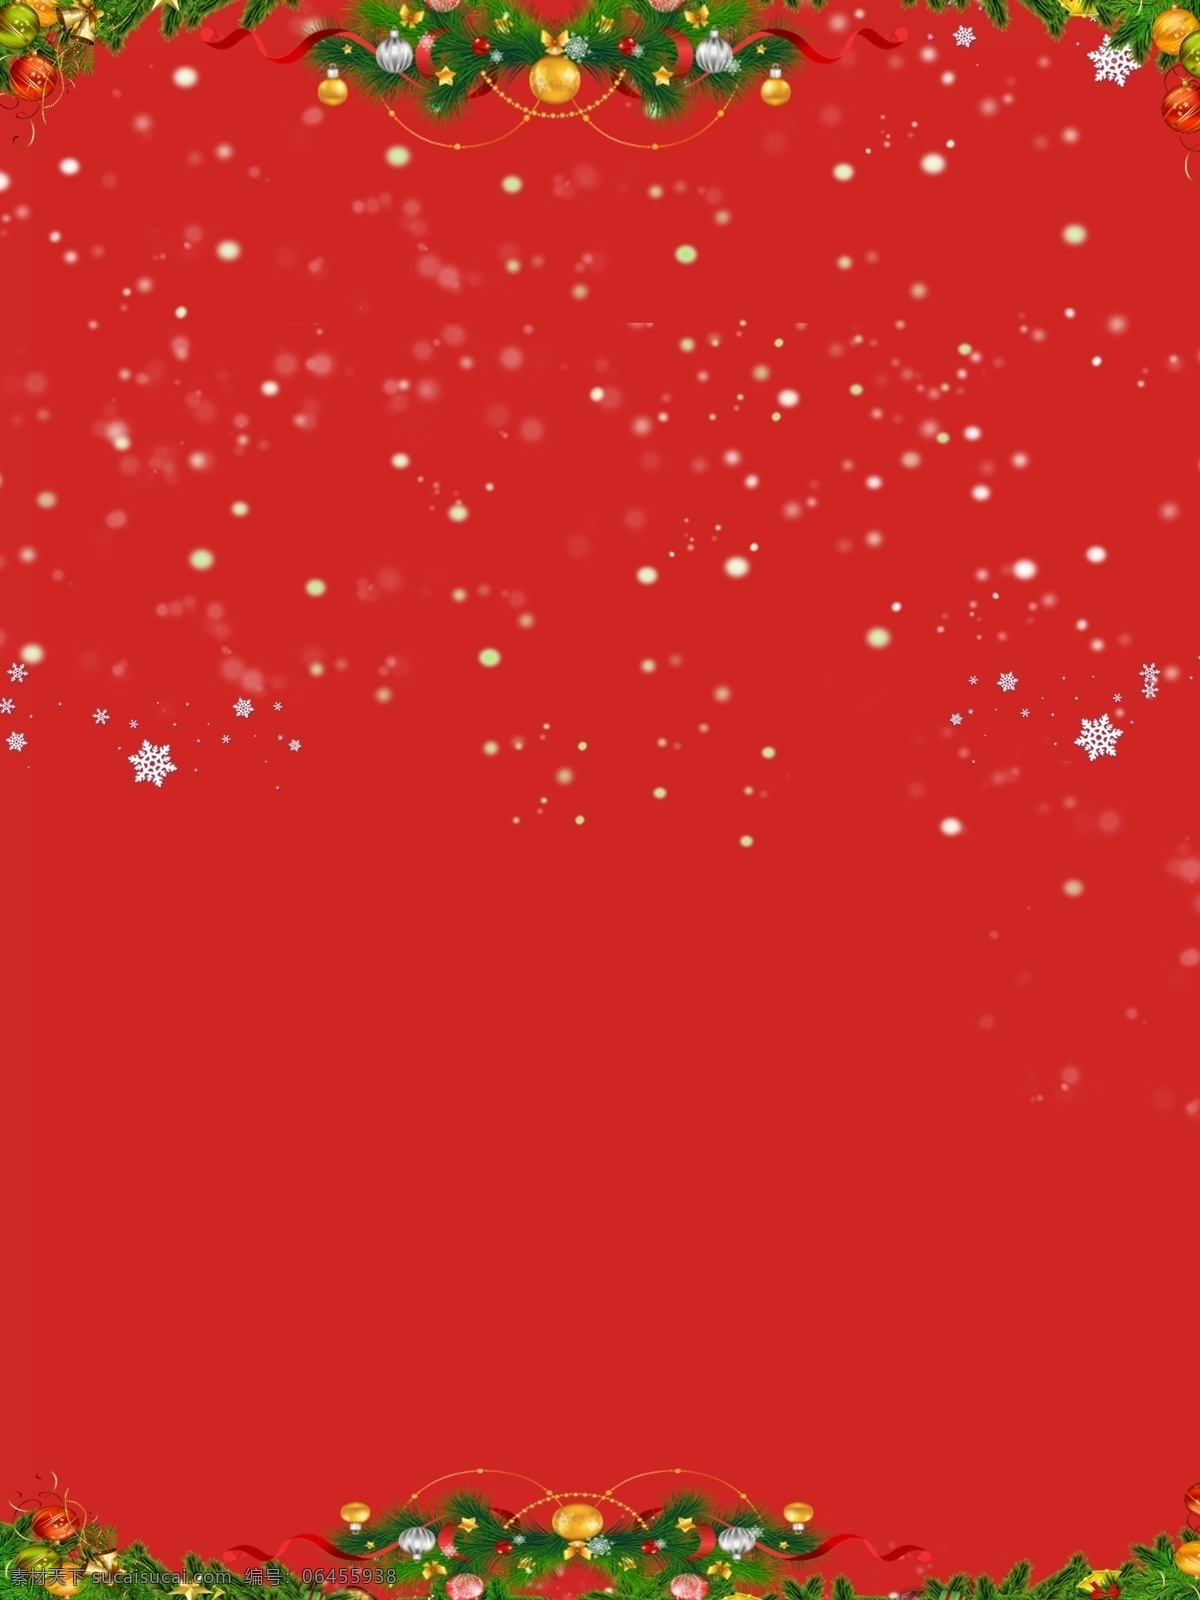 温馨 圣诞节 背景 红色 圣诞快乐 松枝 圣诞 圣诞展架 彩球 圣诞背景模板 背景设计 创意圣诞背景